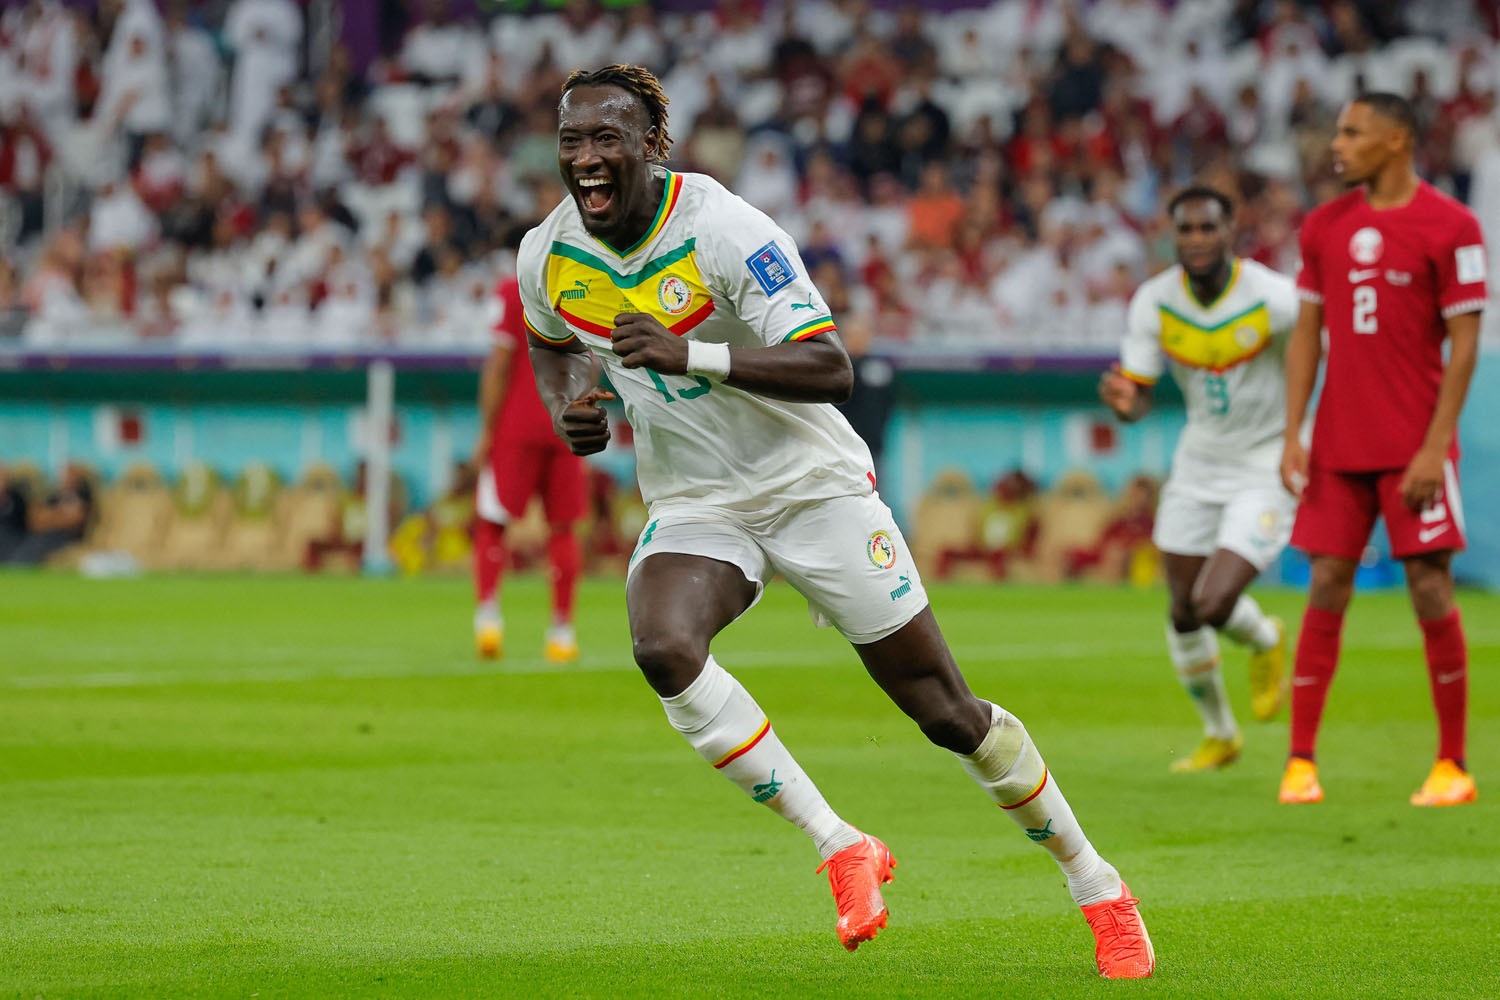 विश्वकप फुटबल प्रतियोगिता : सेनेगलद्वारा आयोजक कतार पराजित